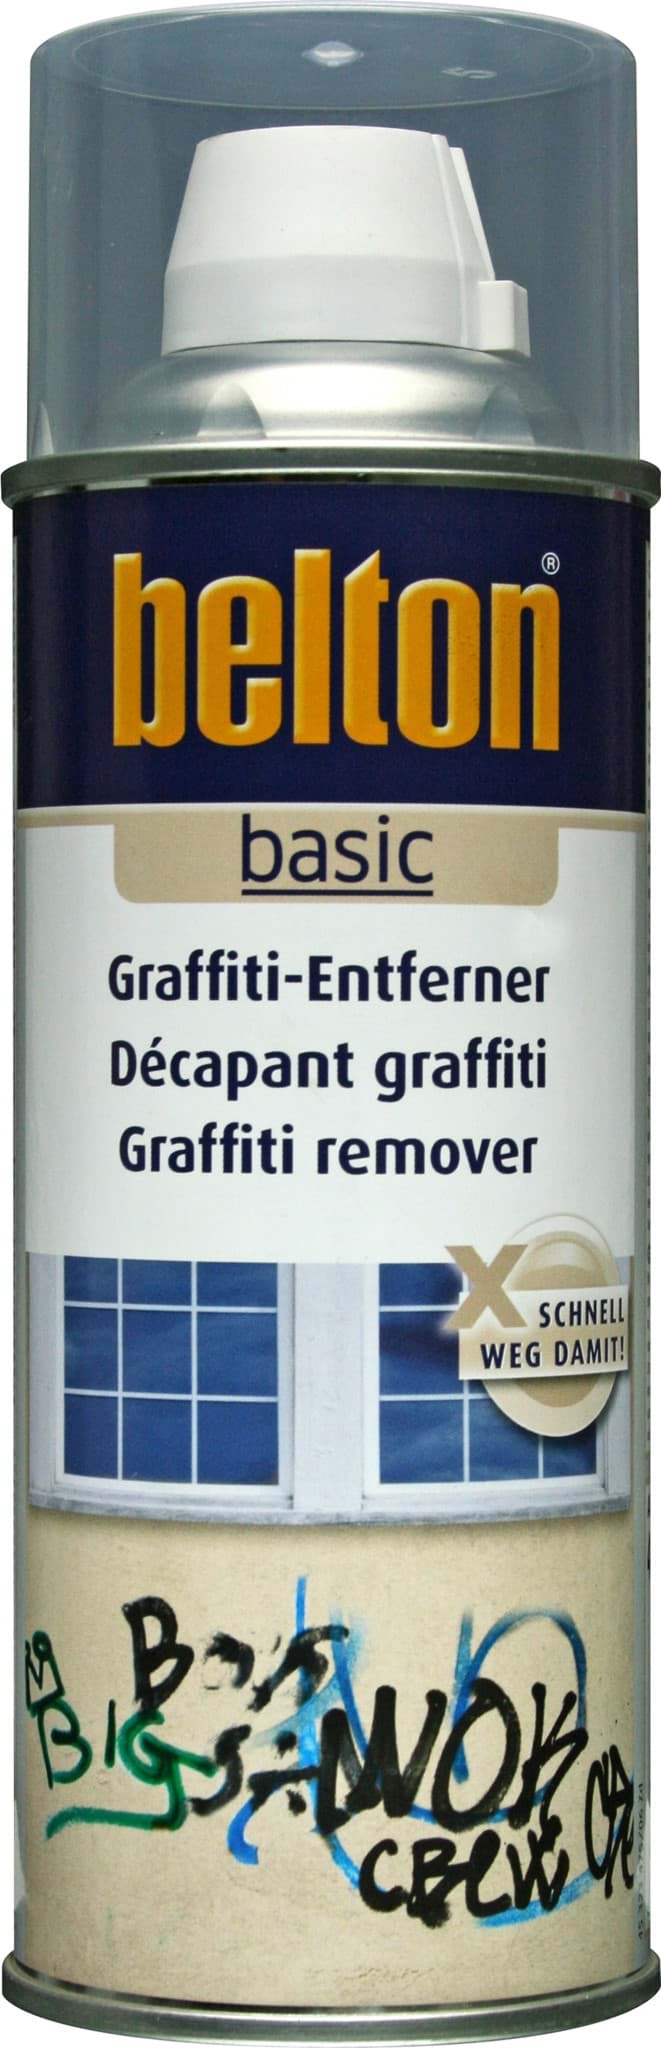 Изображение Belton basic Graffiti-Entferner